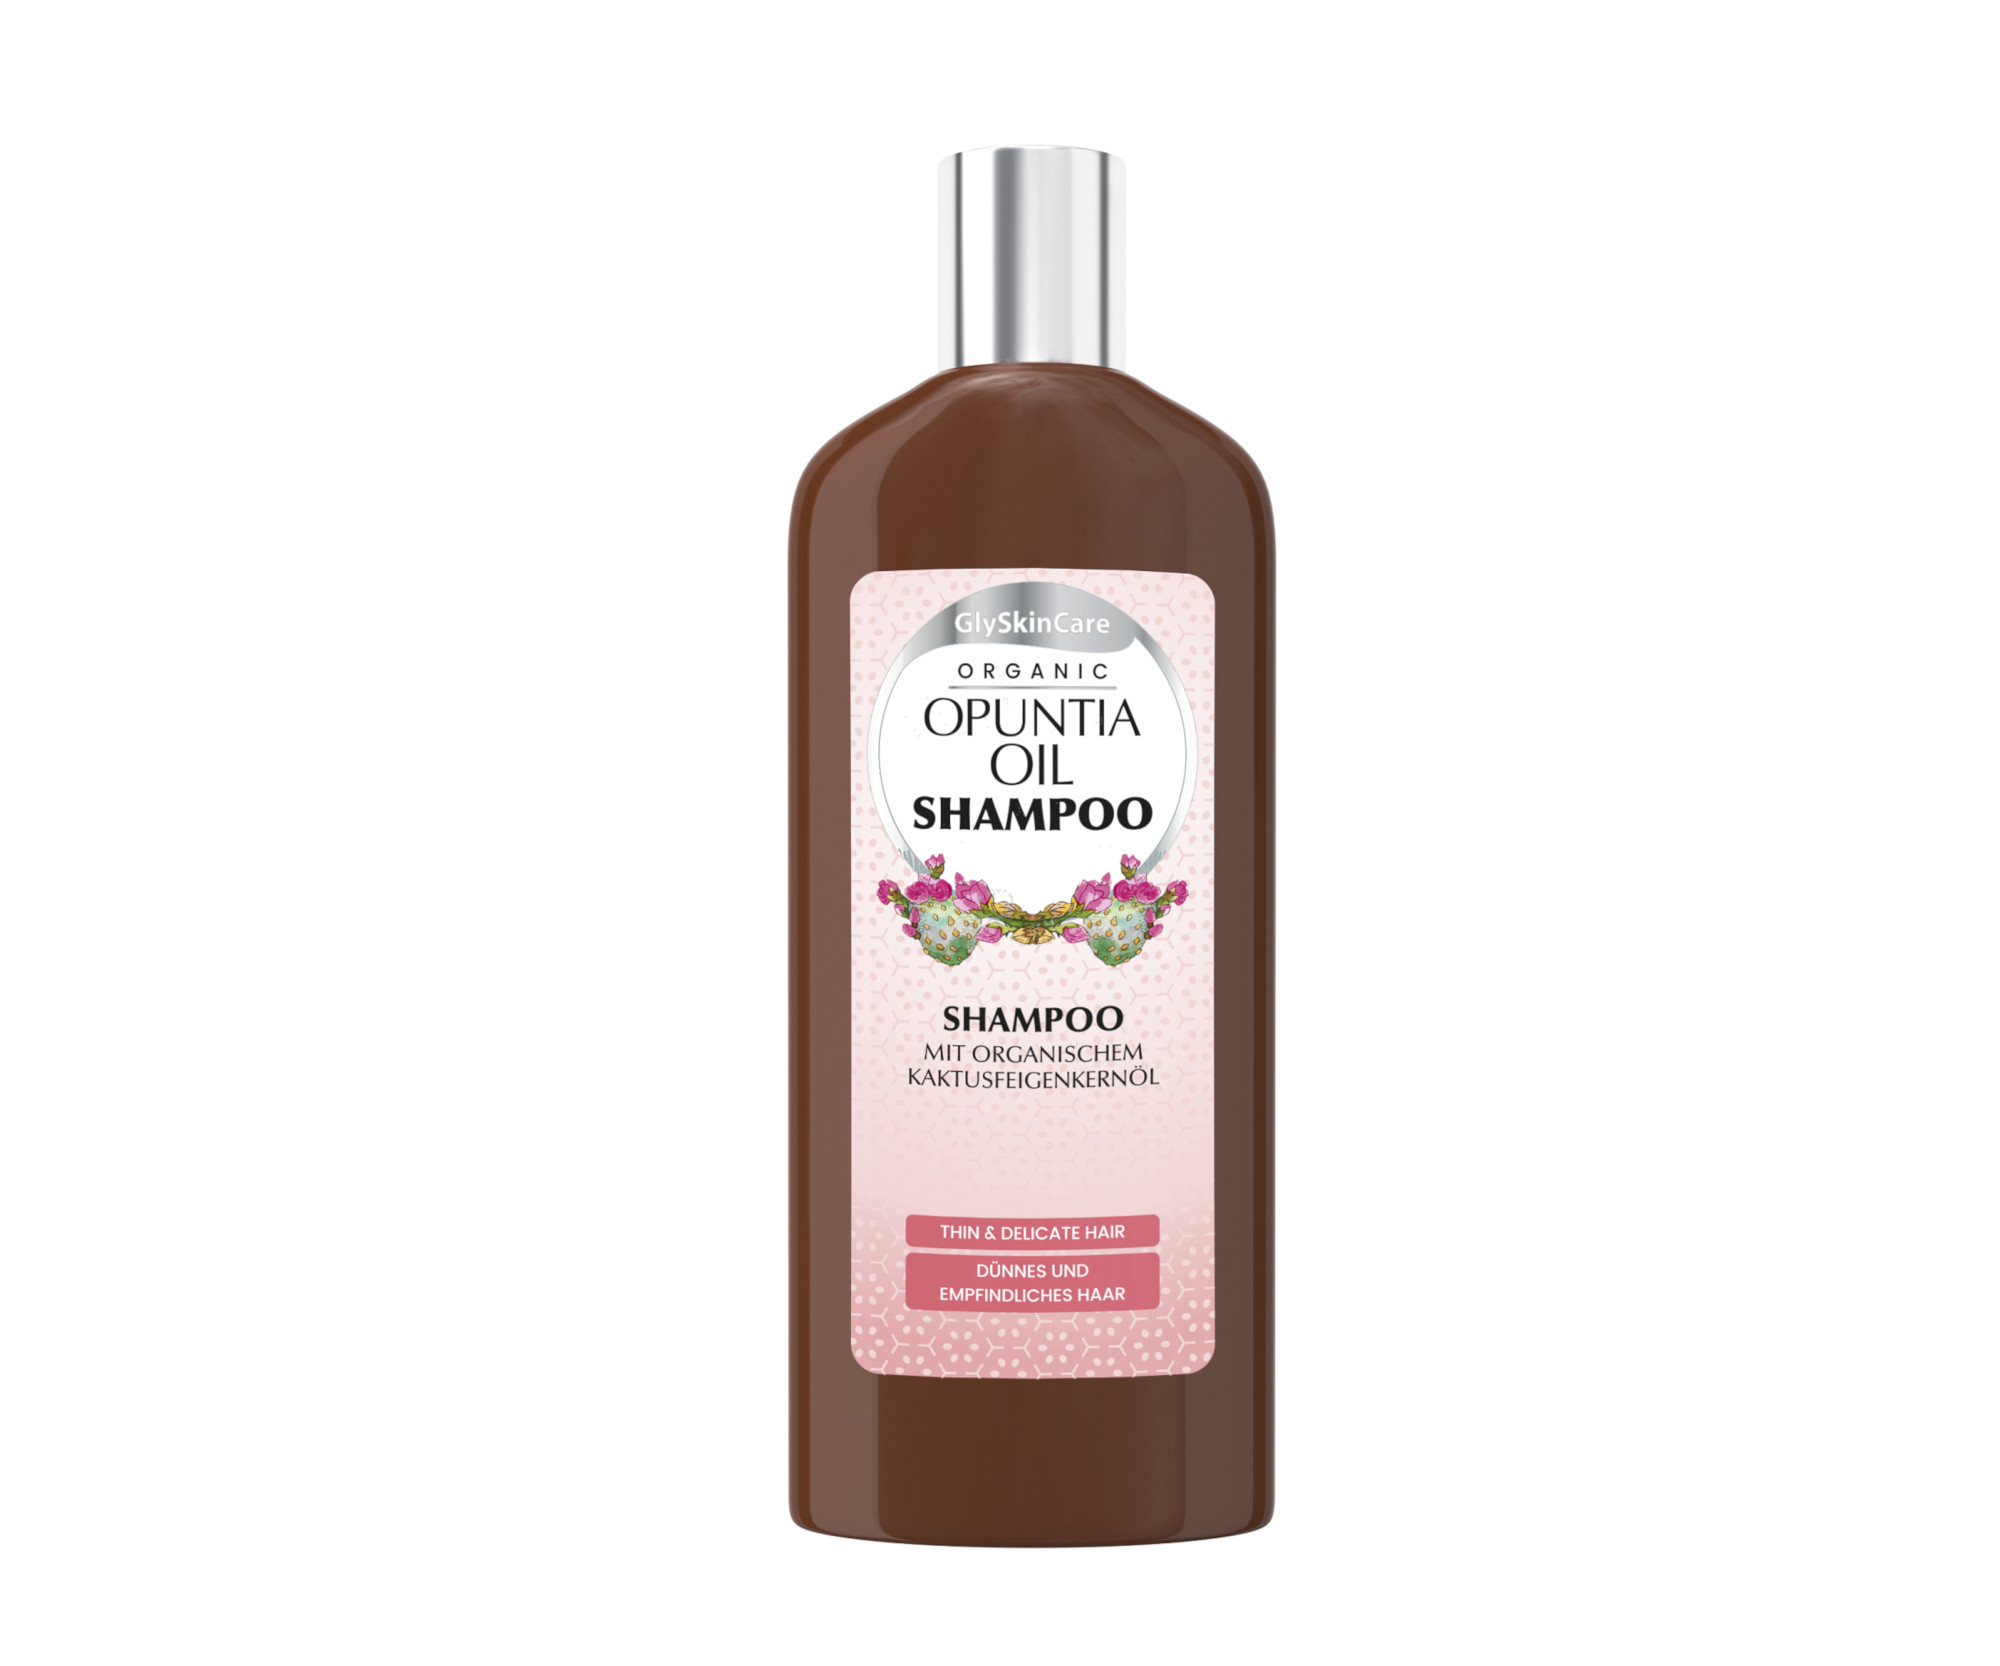 Šampon pro jemné vlasy s opunciovým olejem GlySkinCare Organic Opuntia Oil Shampoo - 250 ml (WYR000176)